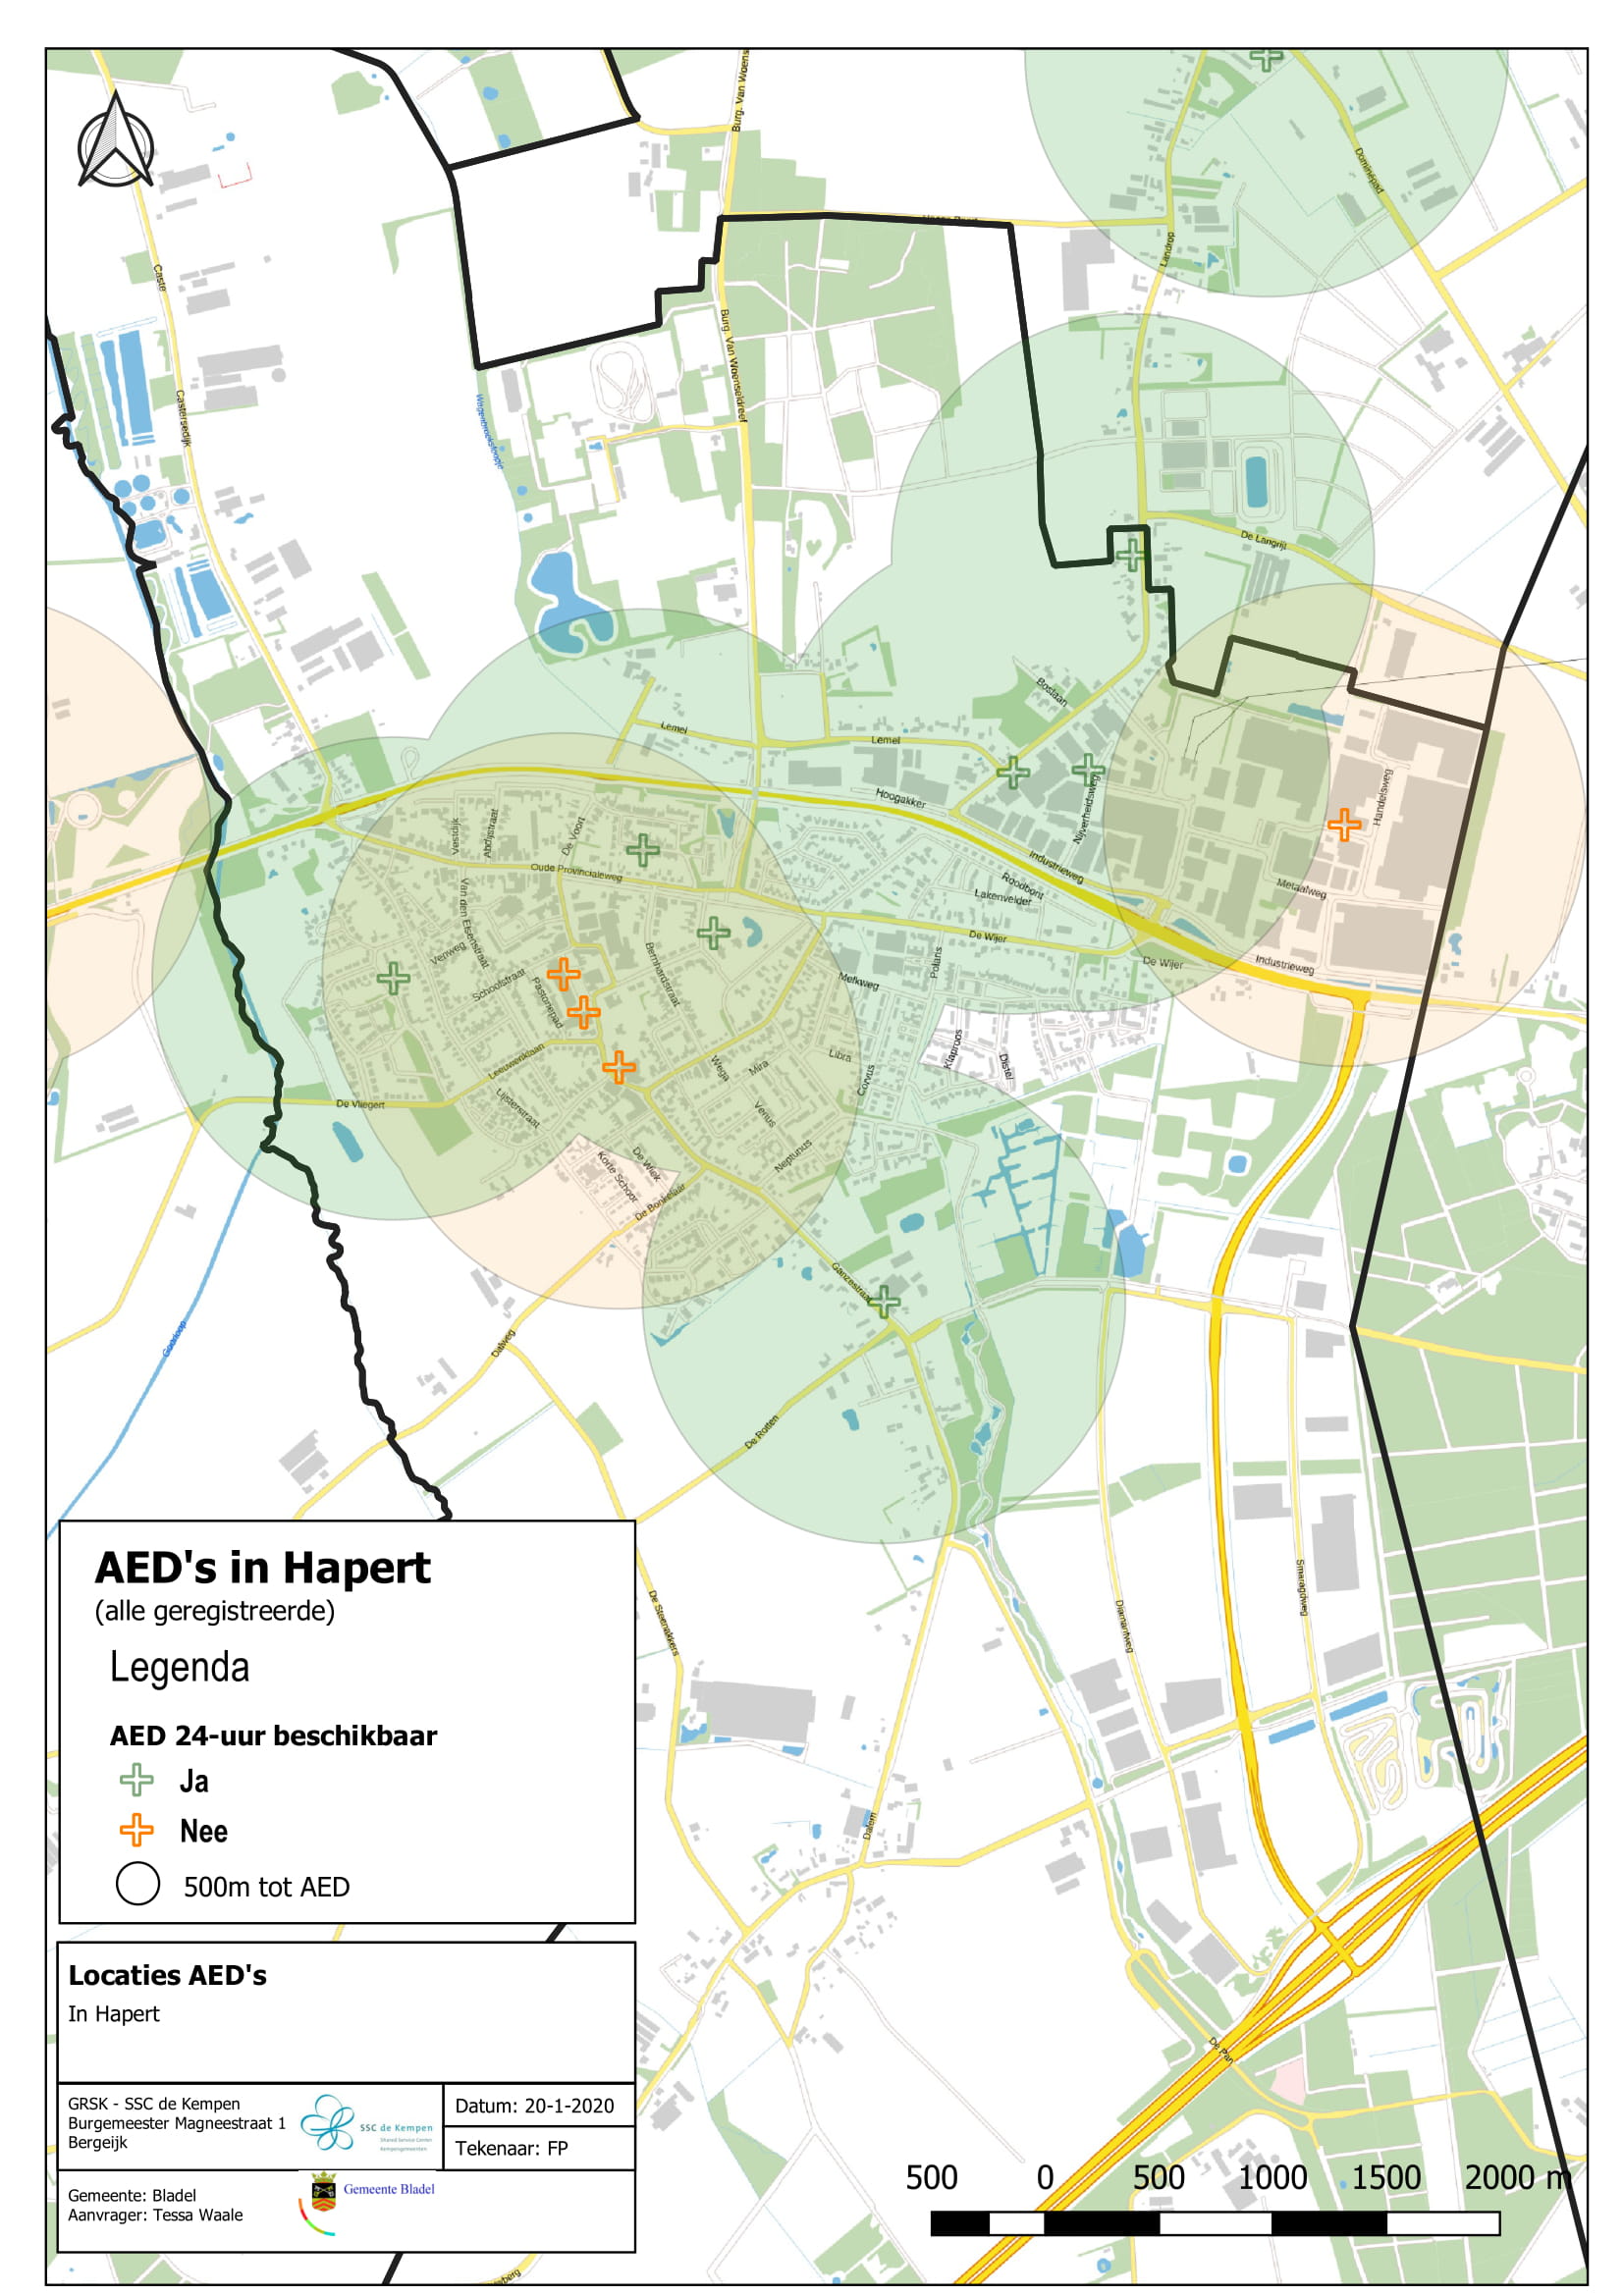 De geregistreerde AED's in Hapert. De meeste AED's zijn 24/7 beschikbaar. 4 Aed's zijn beschikbaar tijdens specifieke tijden. 